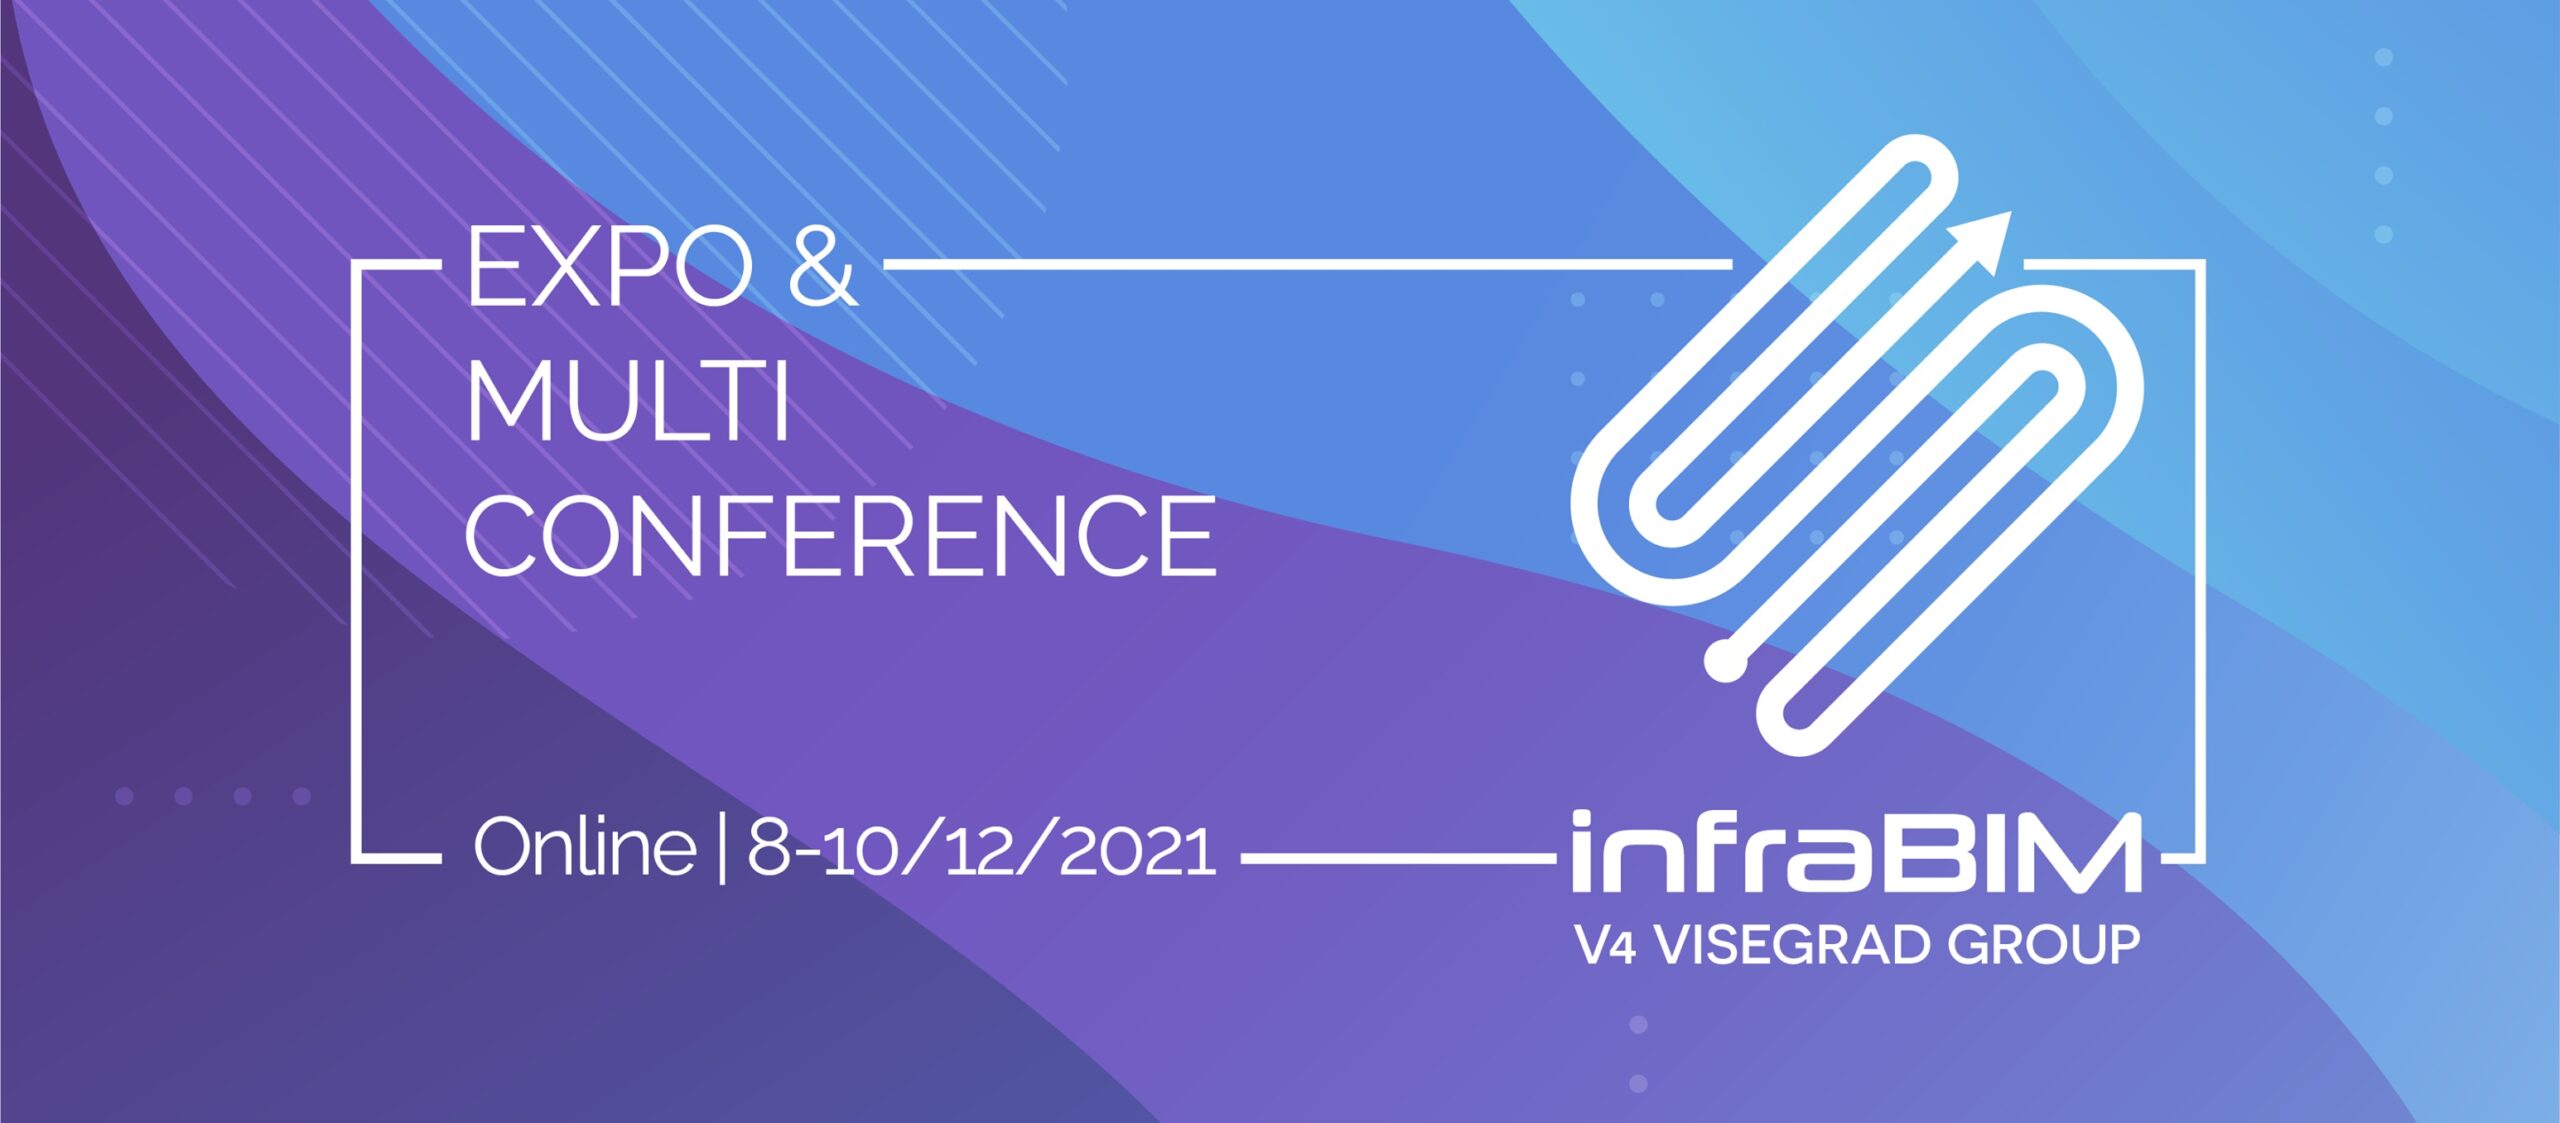 infraBIM 2021 V4 Expo & Multi-Conference